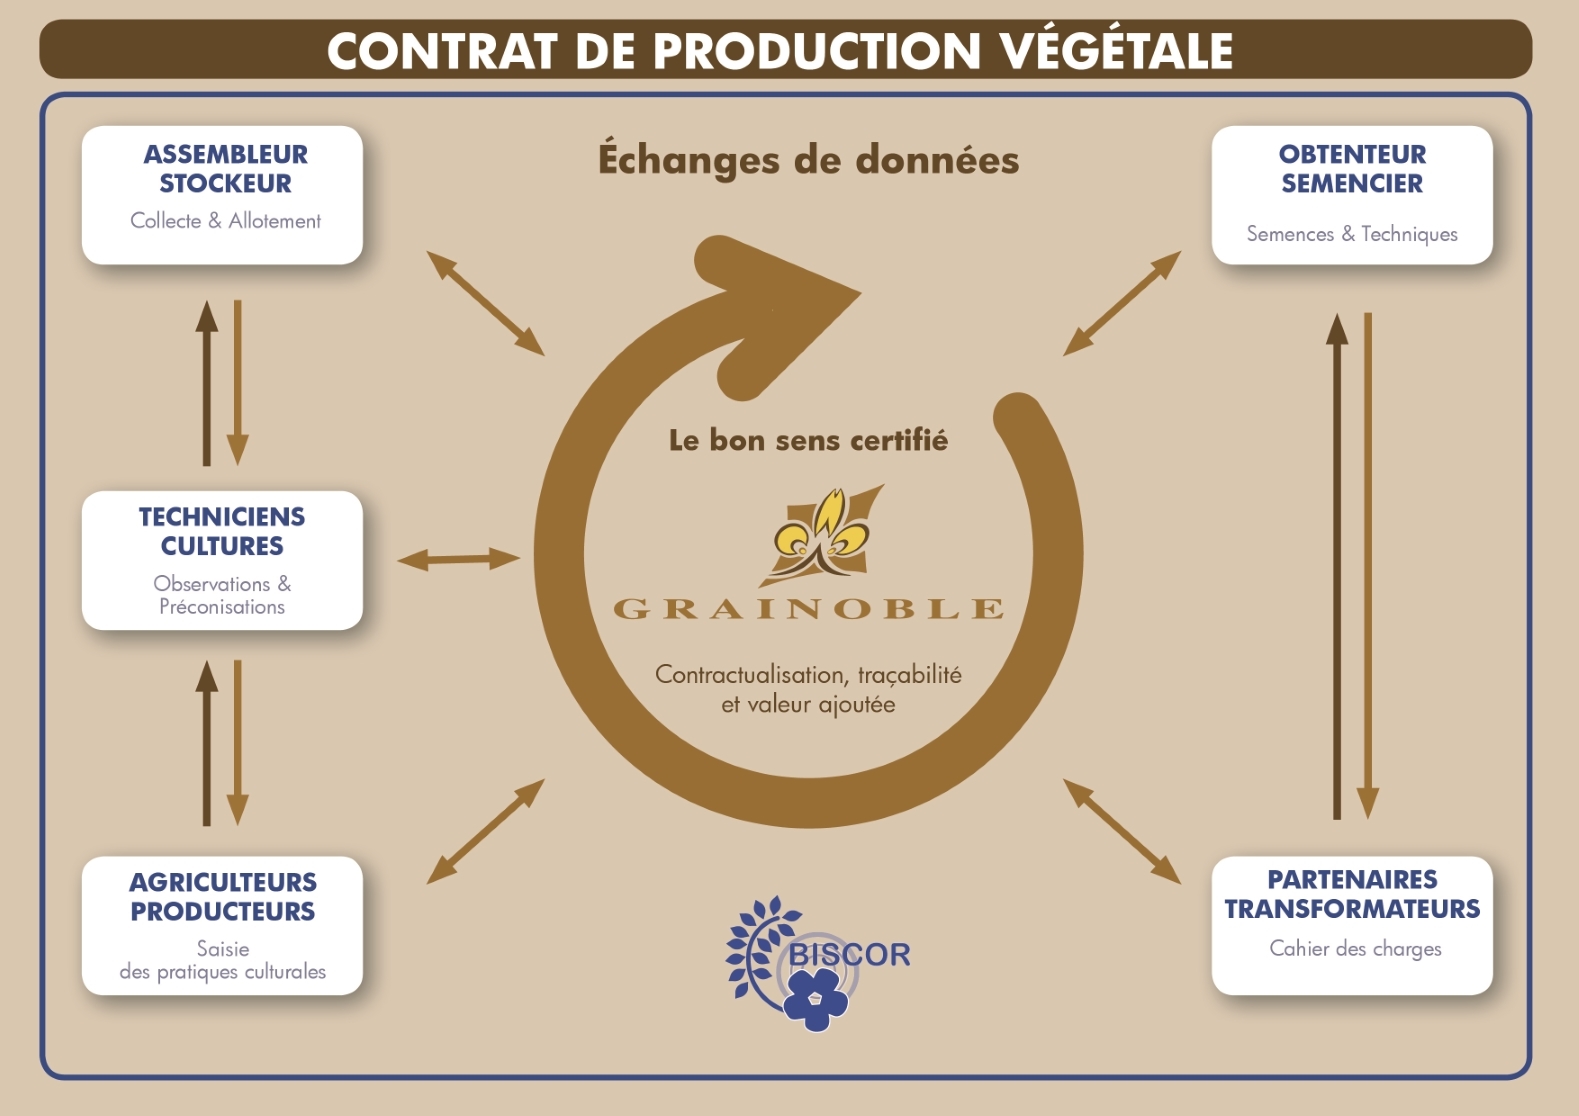 CONTRAT DE PRODUCTION VEGETALE